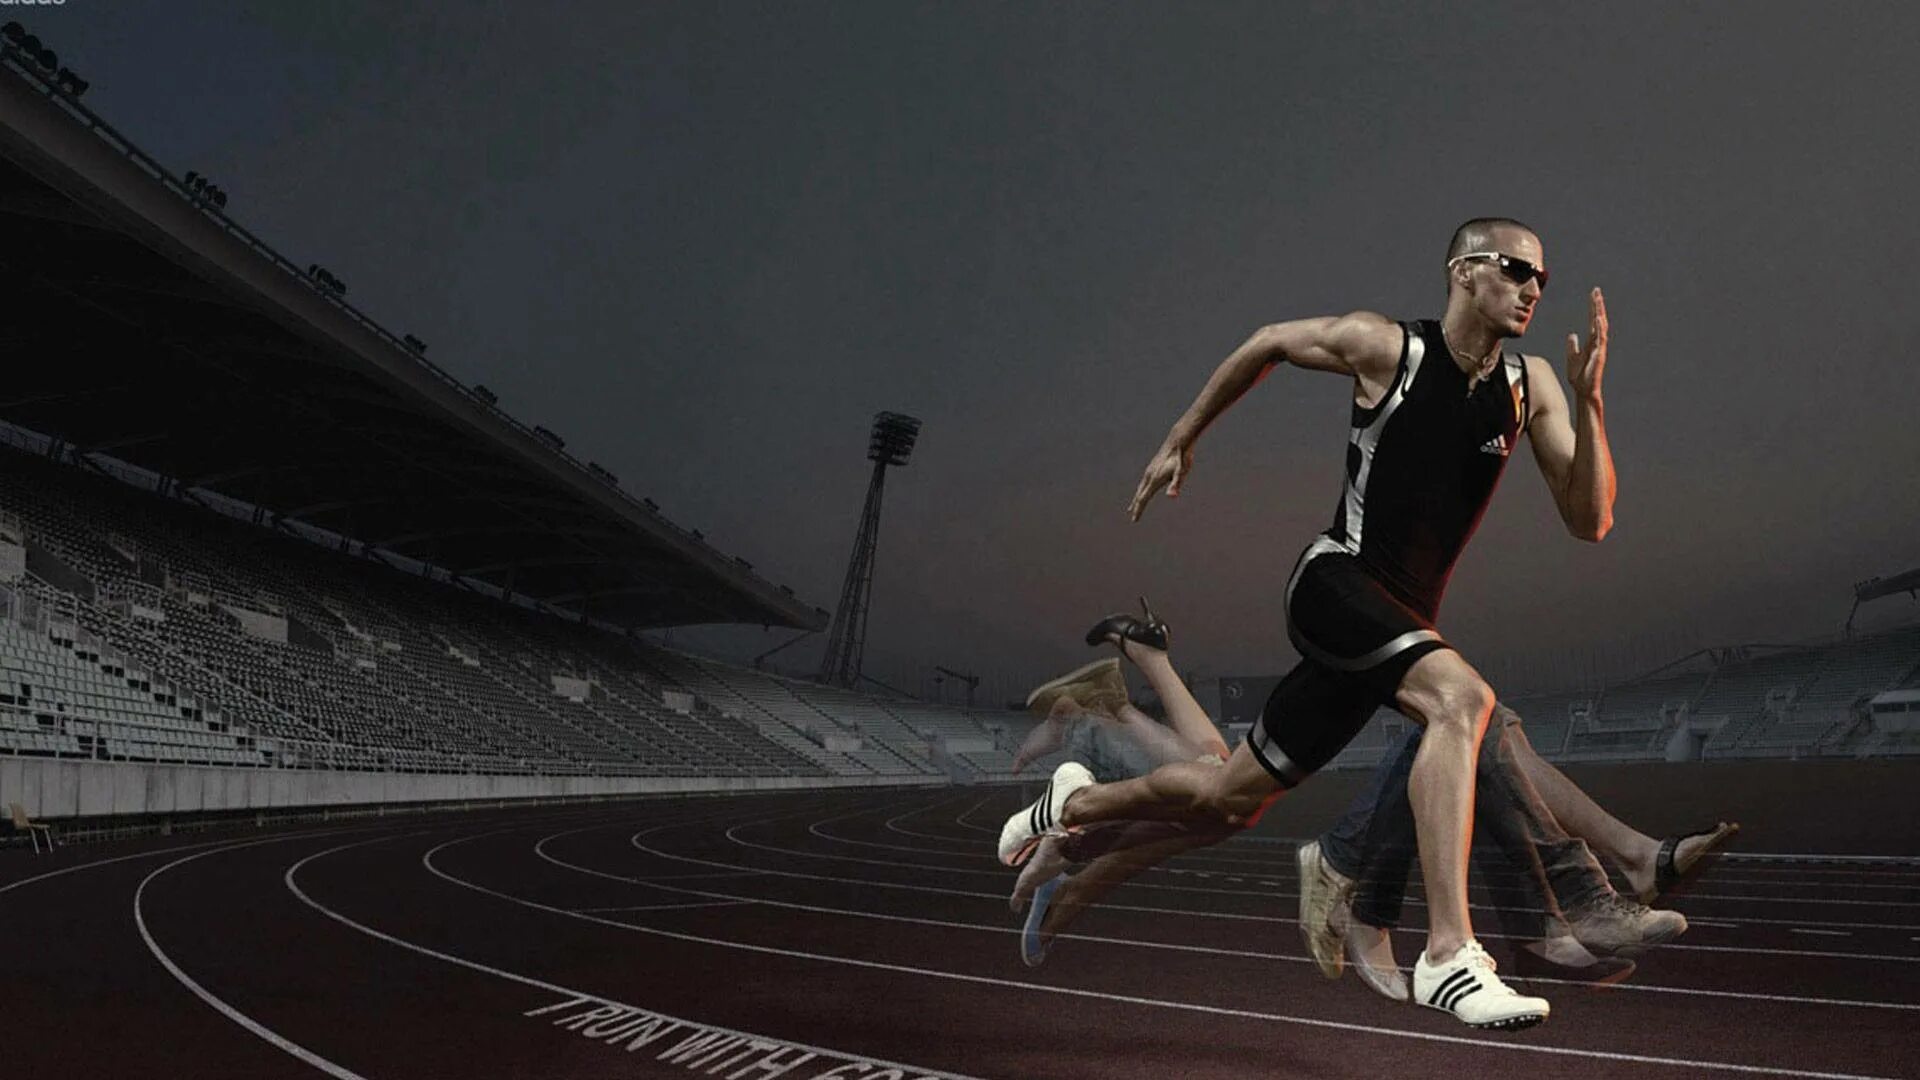 Олимпийский бегун Замперини. Спортсмены в движении. Спортсмен бег. Быстрота движения.